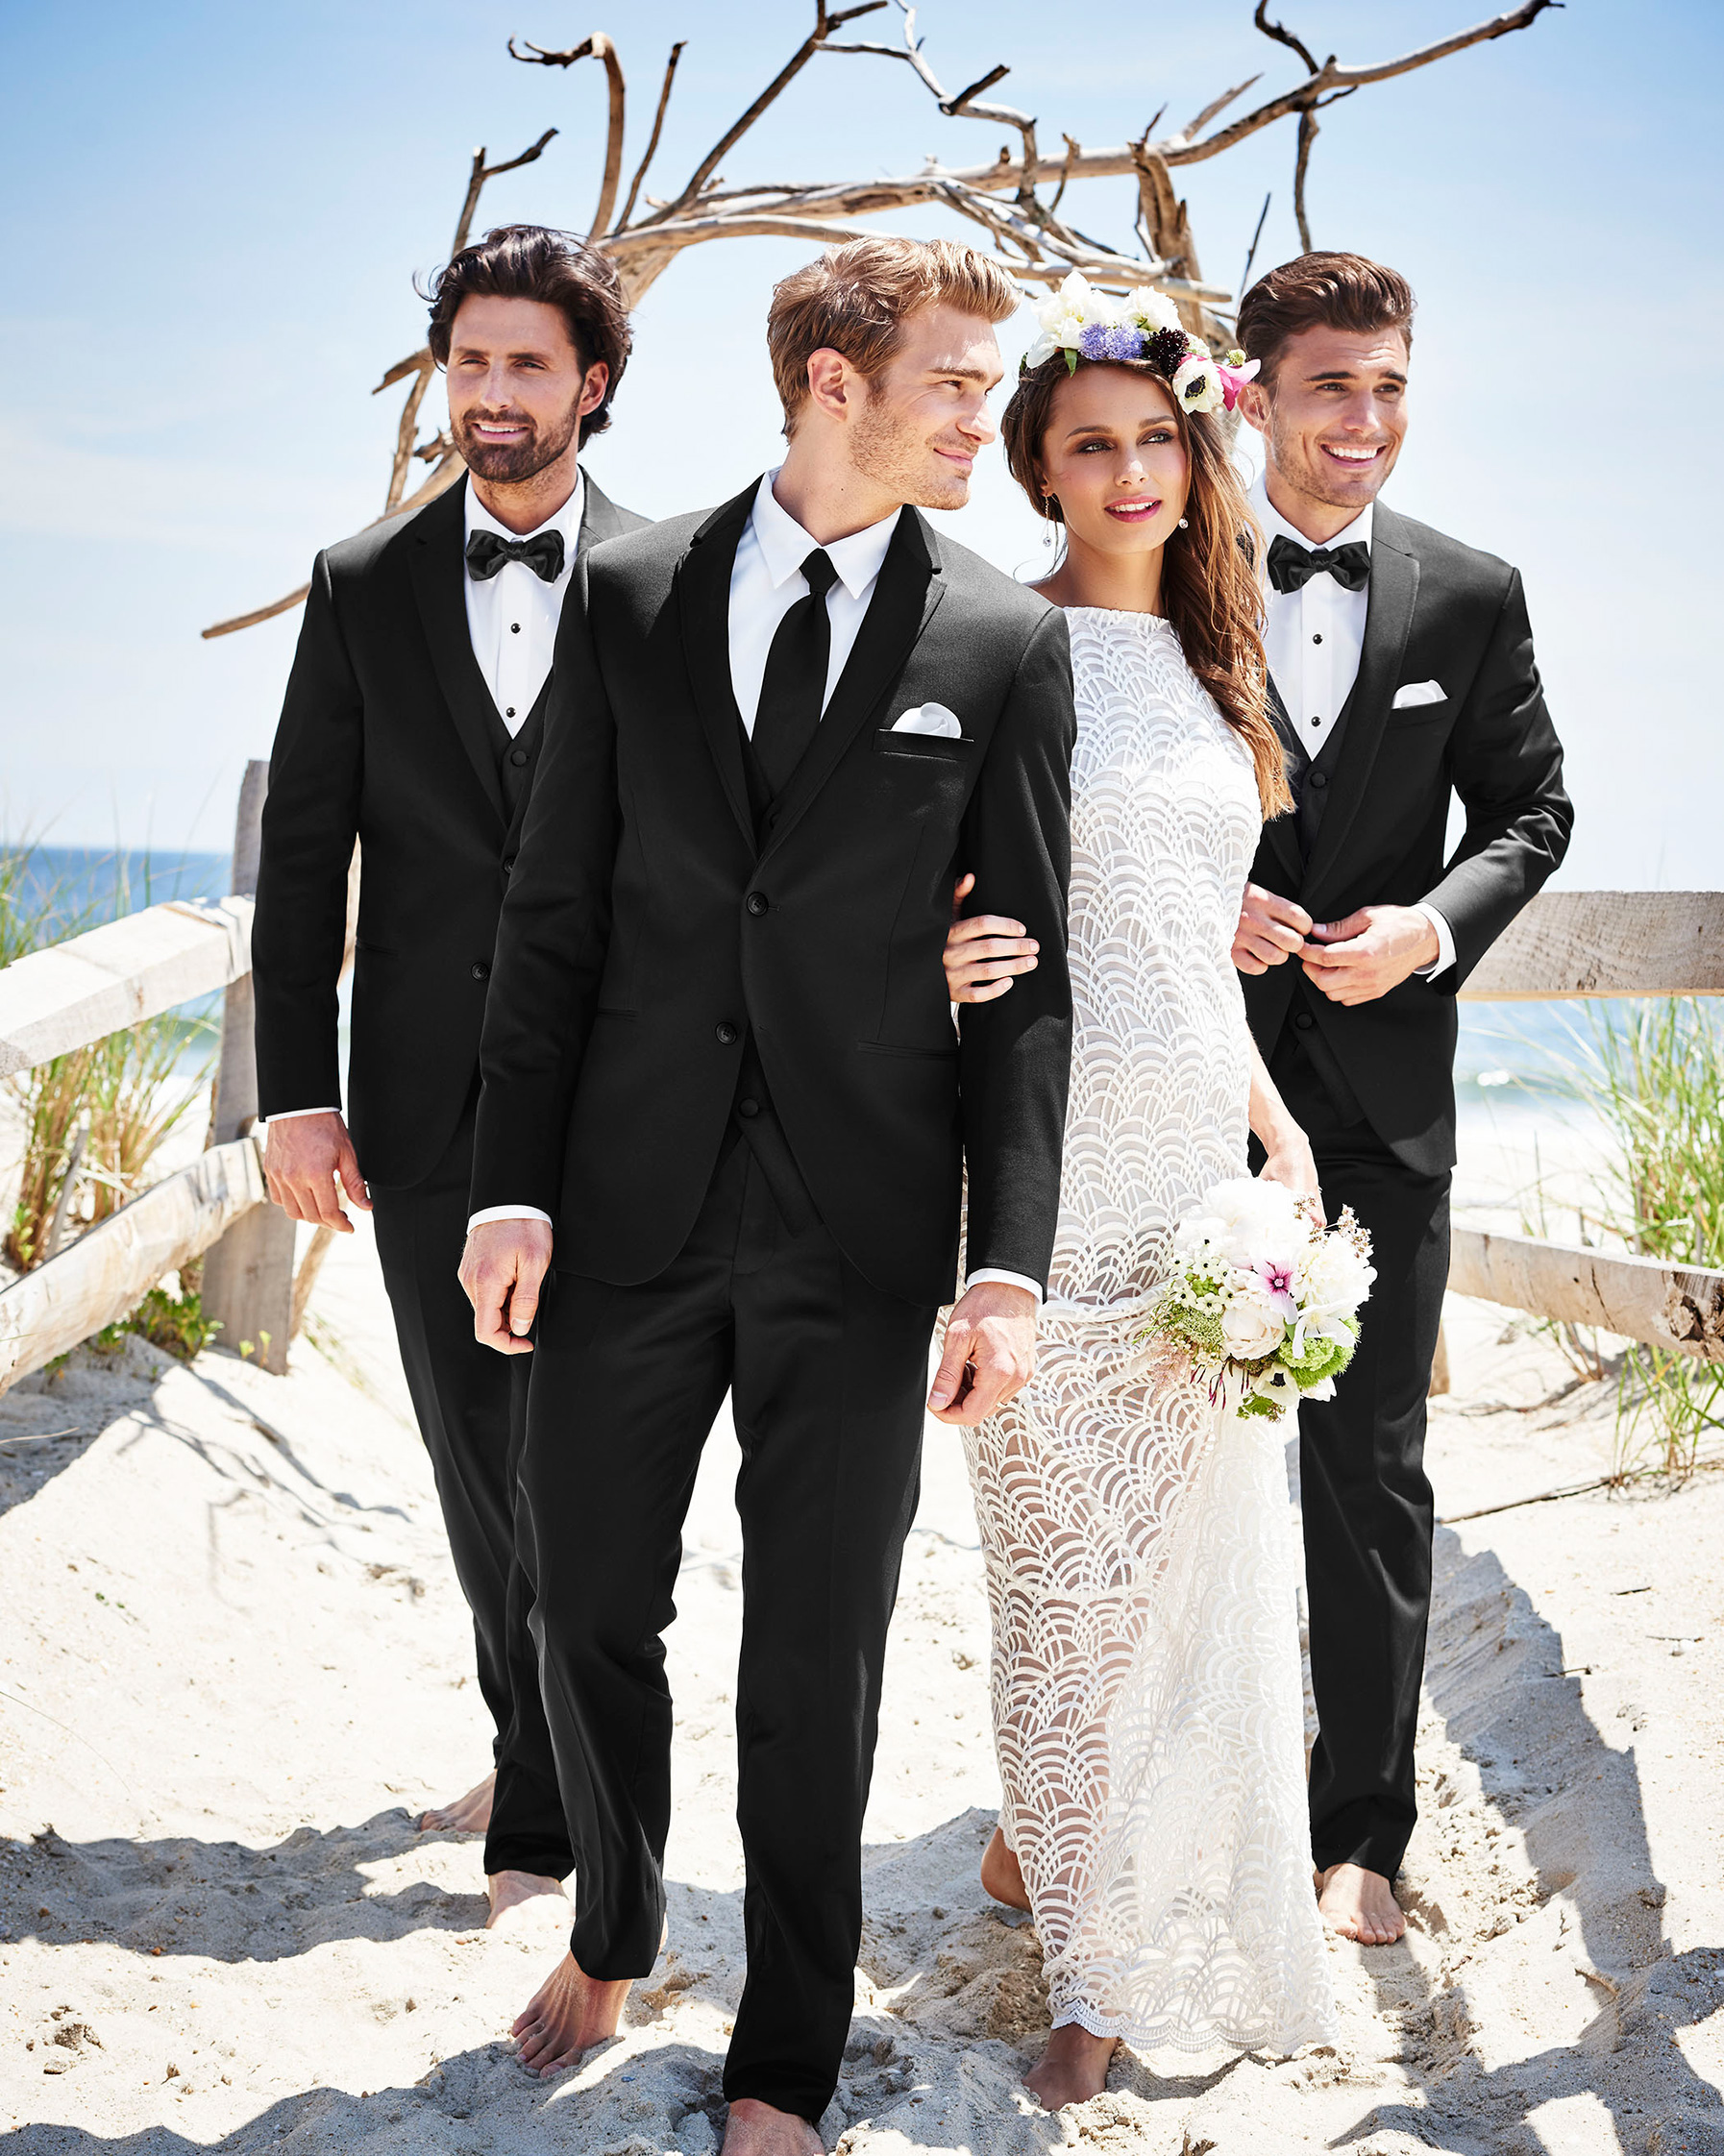 Michael Kors  Grey Passion  The Model Shop  Wedding Dresses  Tuxedos   Prom Dresses  Newfoundland and Labrador  Canada